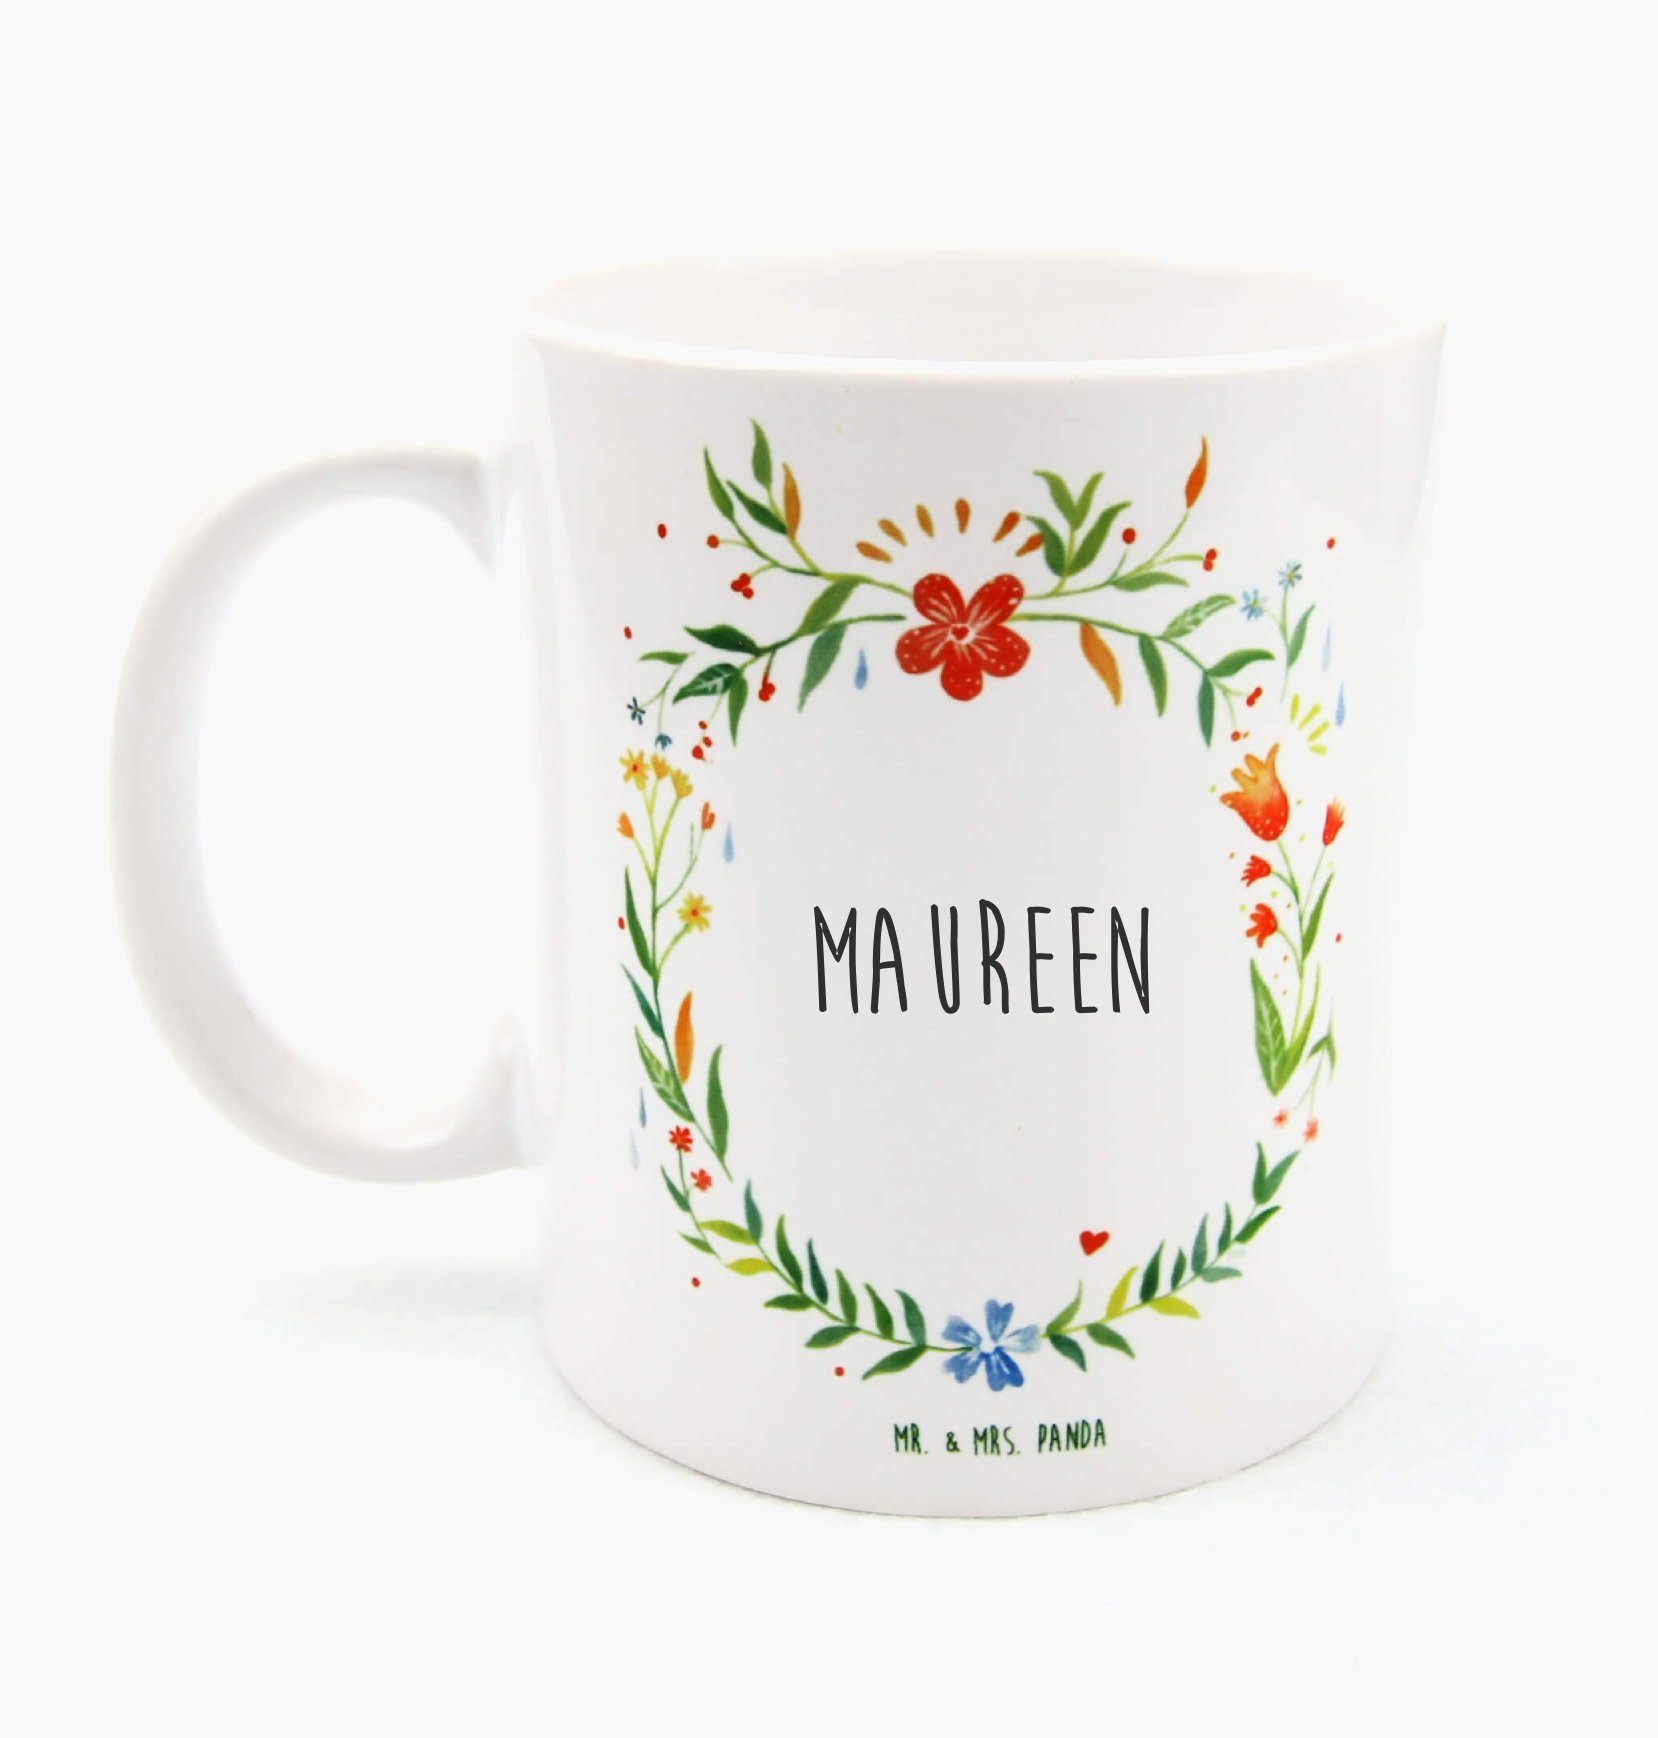 Mr. & Mrs. Panda Tasse Maureen - Geschenk, Kaffeetasse, Becher, Tasse, Keramiktasse, Porzell, Keramik